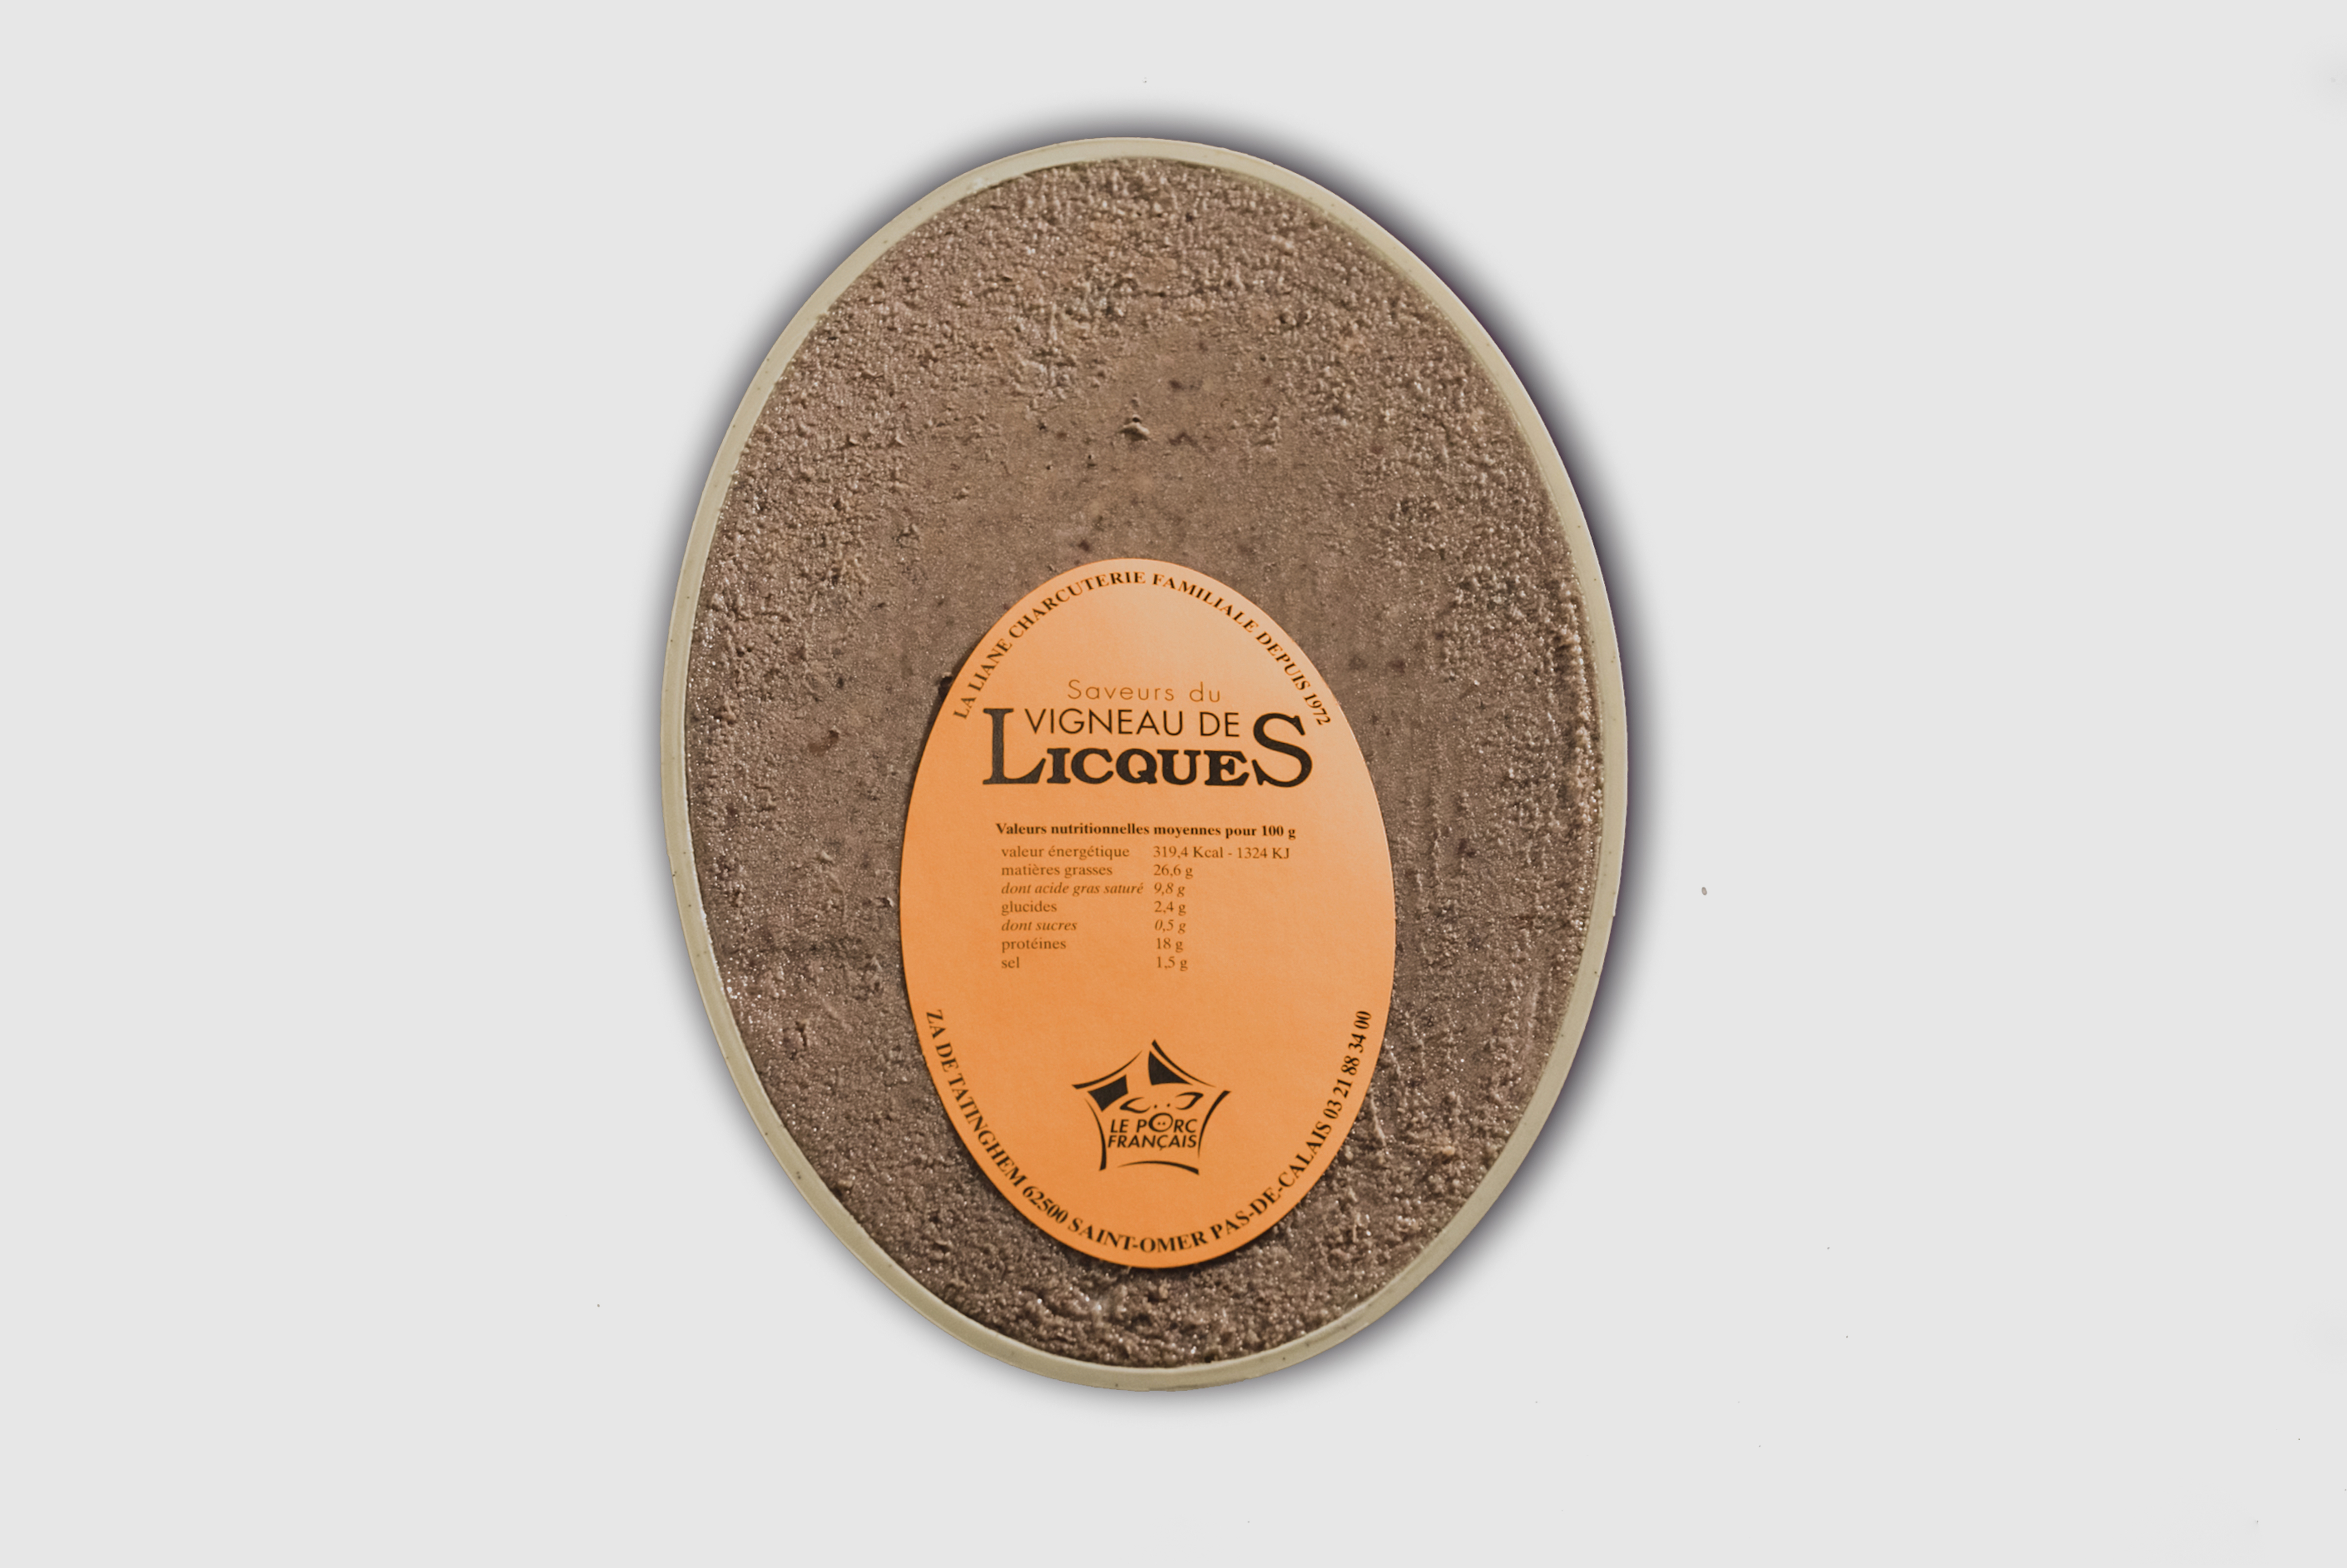 Pate a la Louche (Pork & Spice Terrine) - Local producer 656g